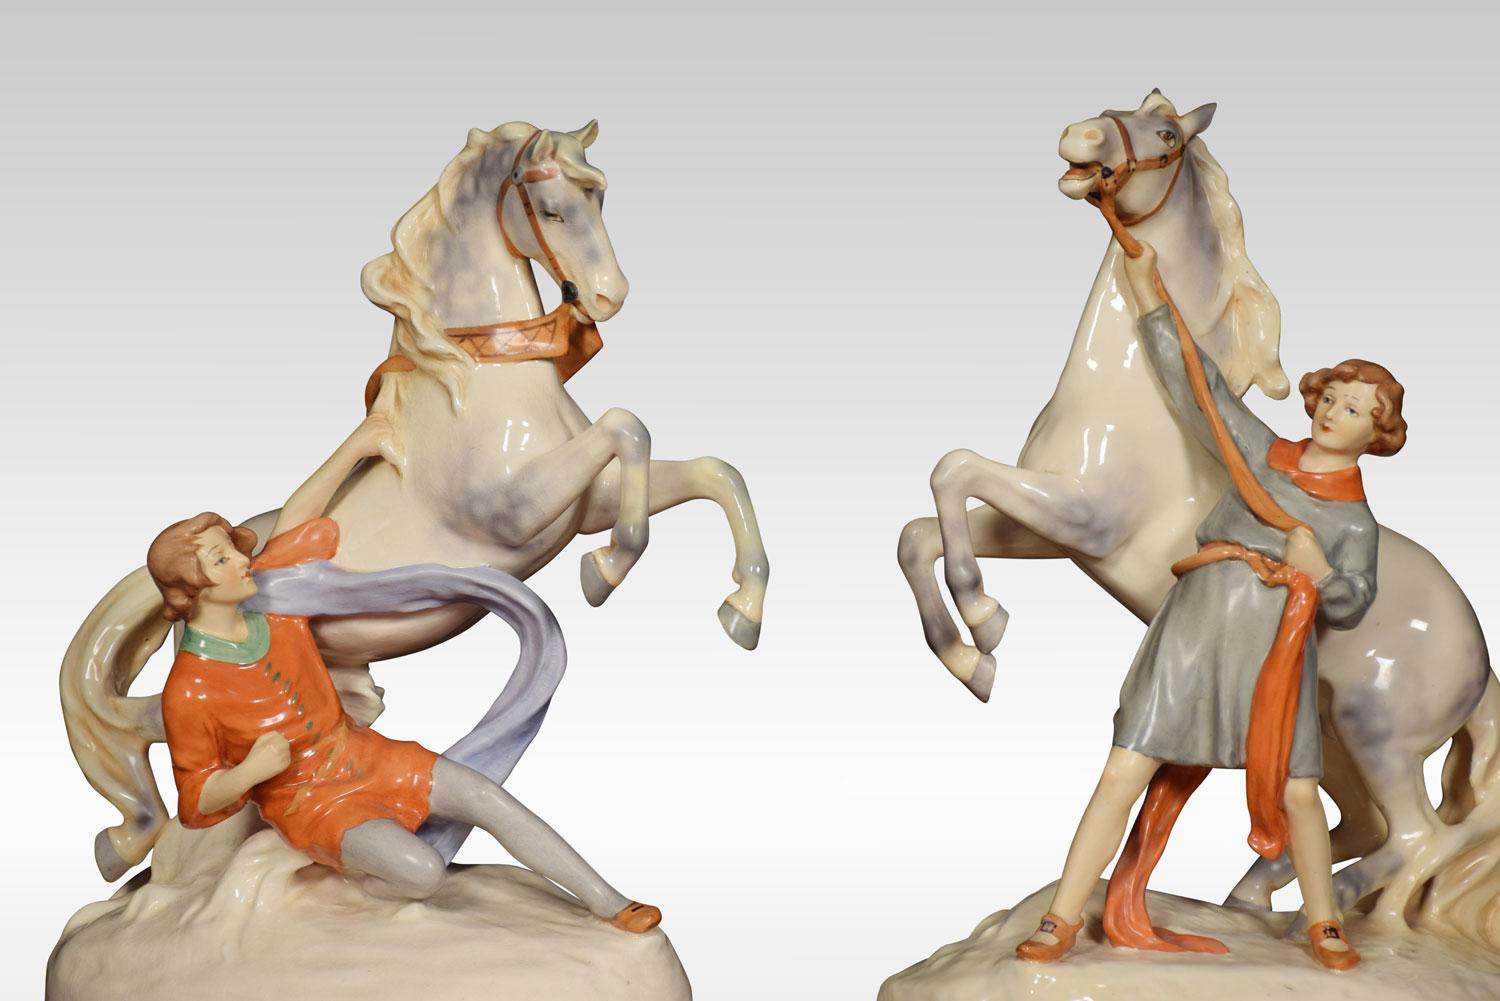 Paar Royal Dux-Figurengruppen von jungen Männern mit Pferden, modelliert in Aufrichtung mit begleitender stabiler Hand, auf ovalen Sockeln. Unterglasurmarke auf dem Sockel.
Abmessungen:
Höhe 19 Zoll
Breite 14,5 Zoll
Tiefe 8 Zoll.